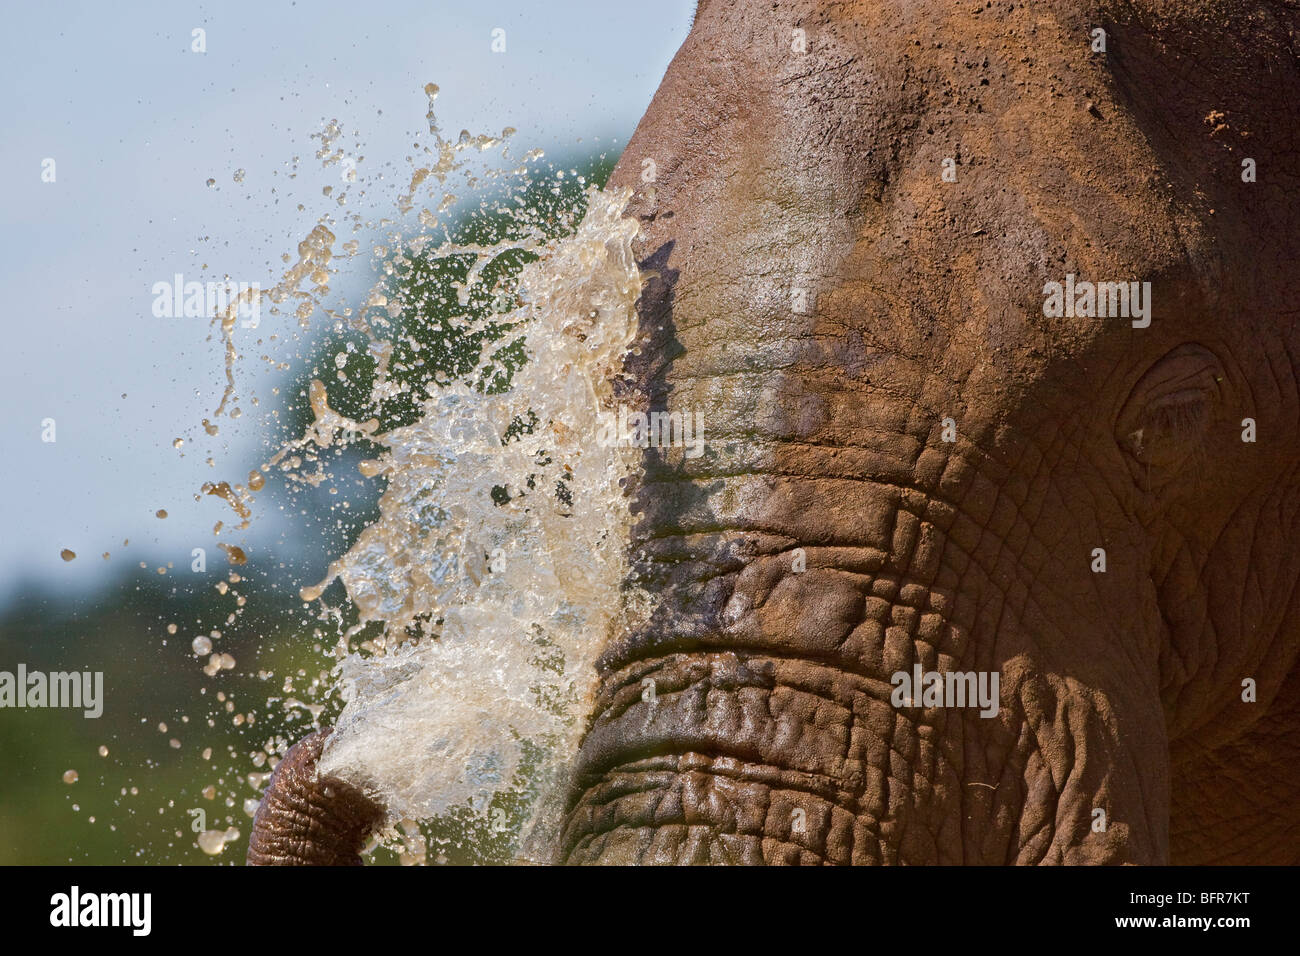 Elefante africano ritratto spruzzi di acqua sulla sua faccia Foto Stock